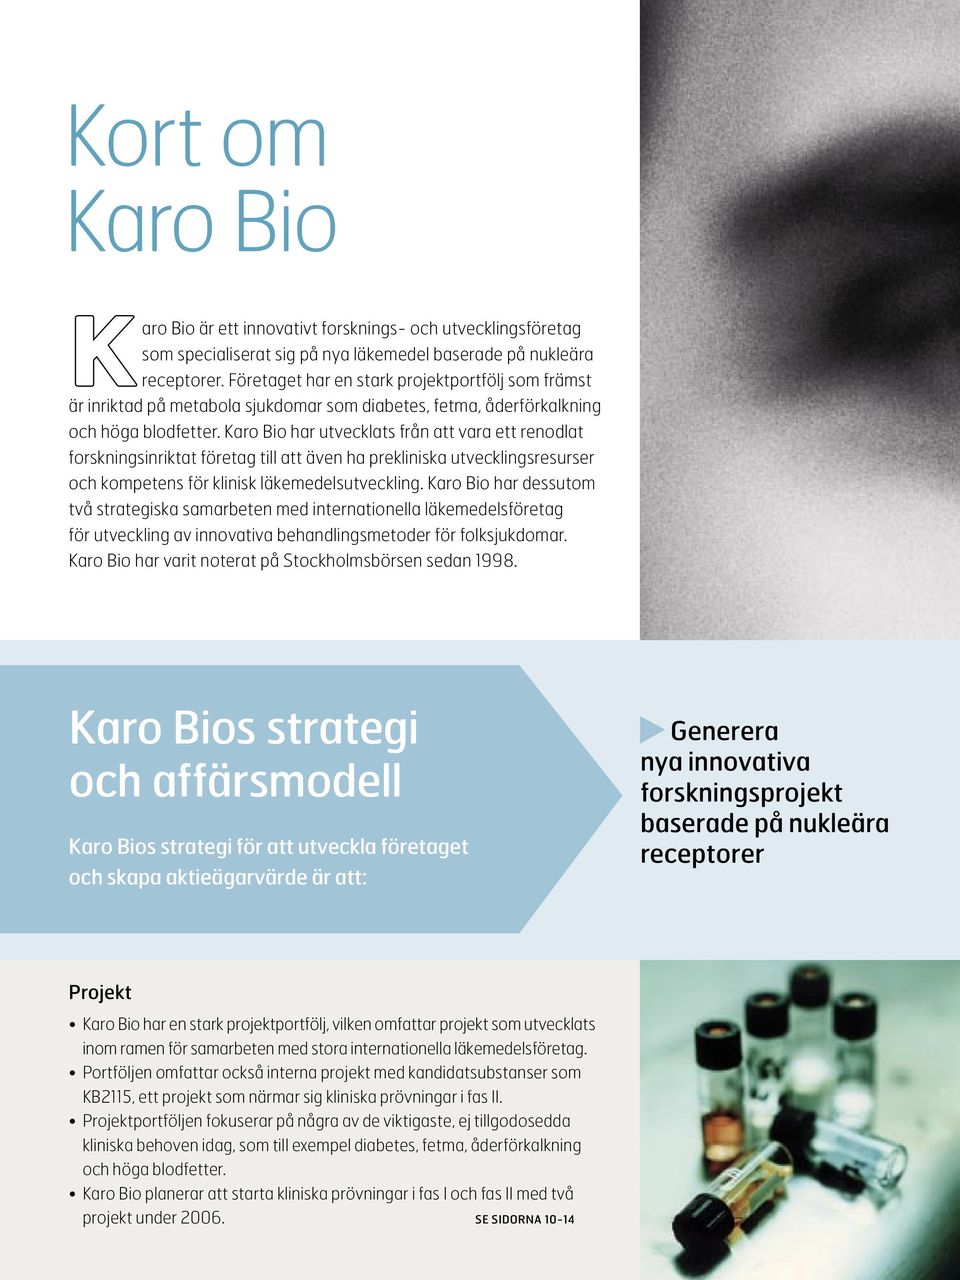 Karo Bio har utvecklats från att vara ett renodlat forskningsinriktat företag till att även ha prekliniska utvecklingsresurser och kompetens för klinisk läkemedelsutveckling.